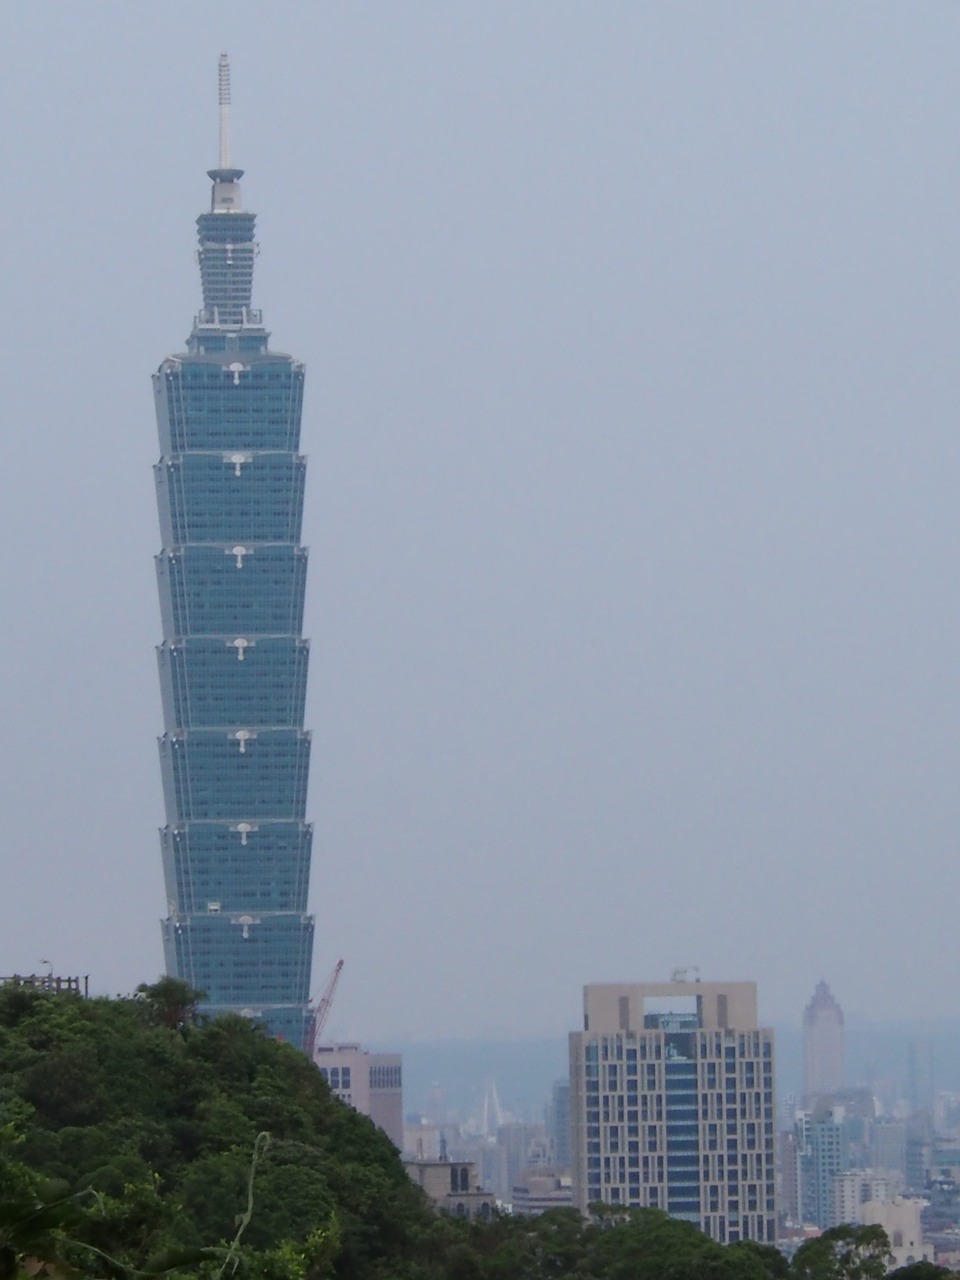 taipei 101 landmarks skyscraper free photo